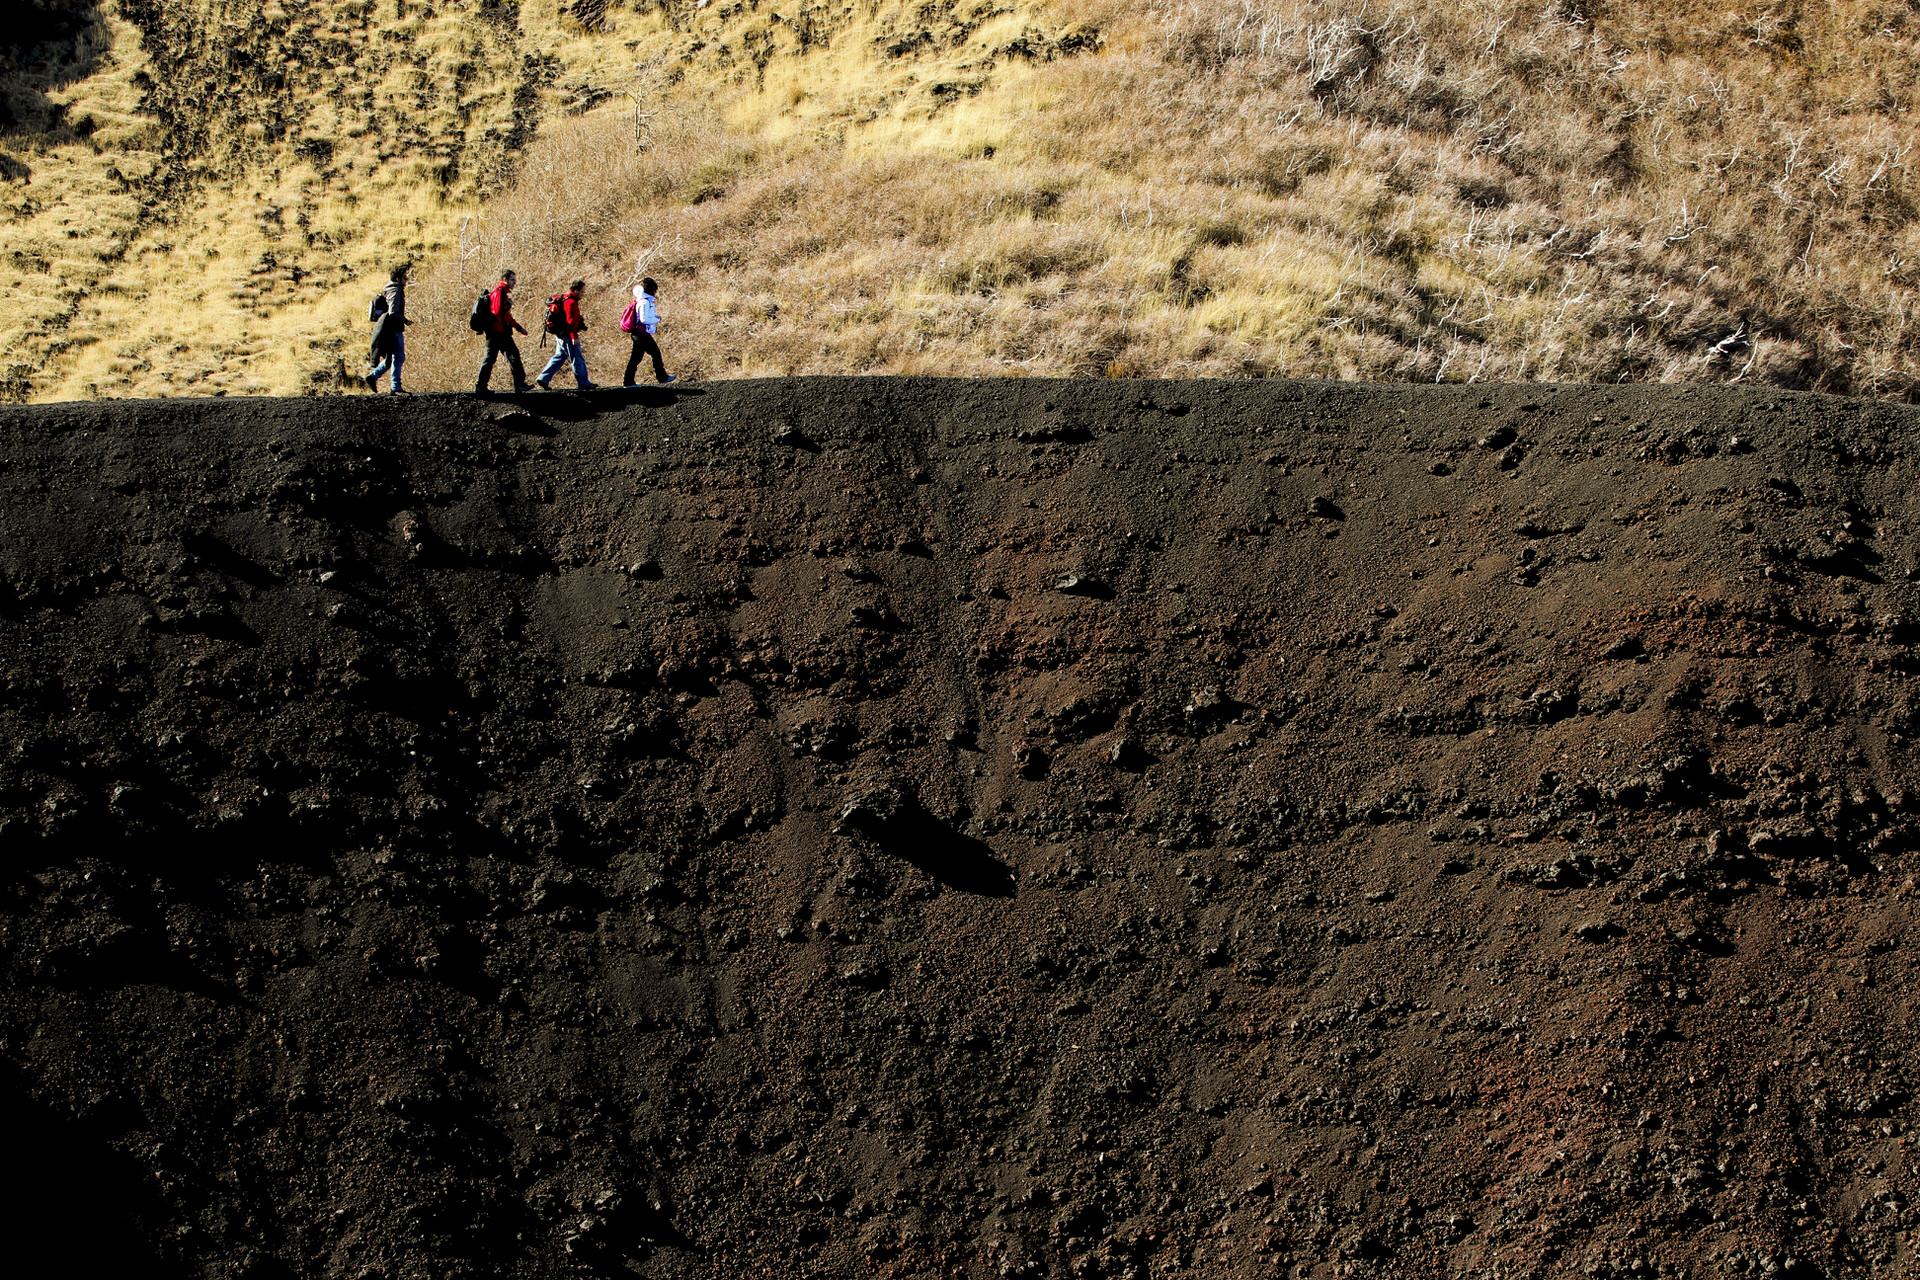 Tour dei crateri nord: scoprite gli enormi crateri e le colate di lava